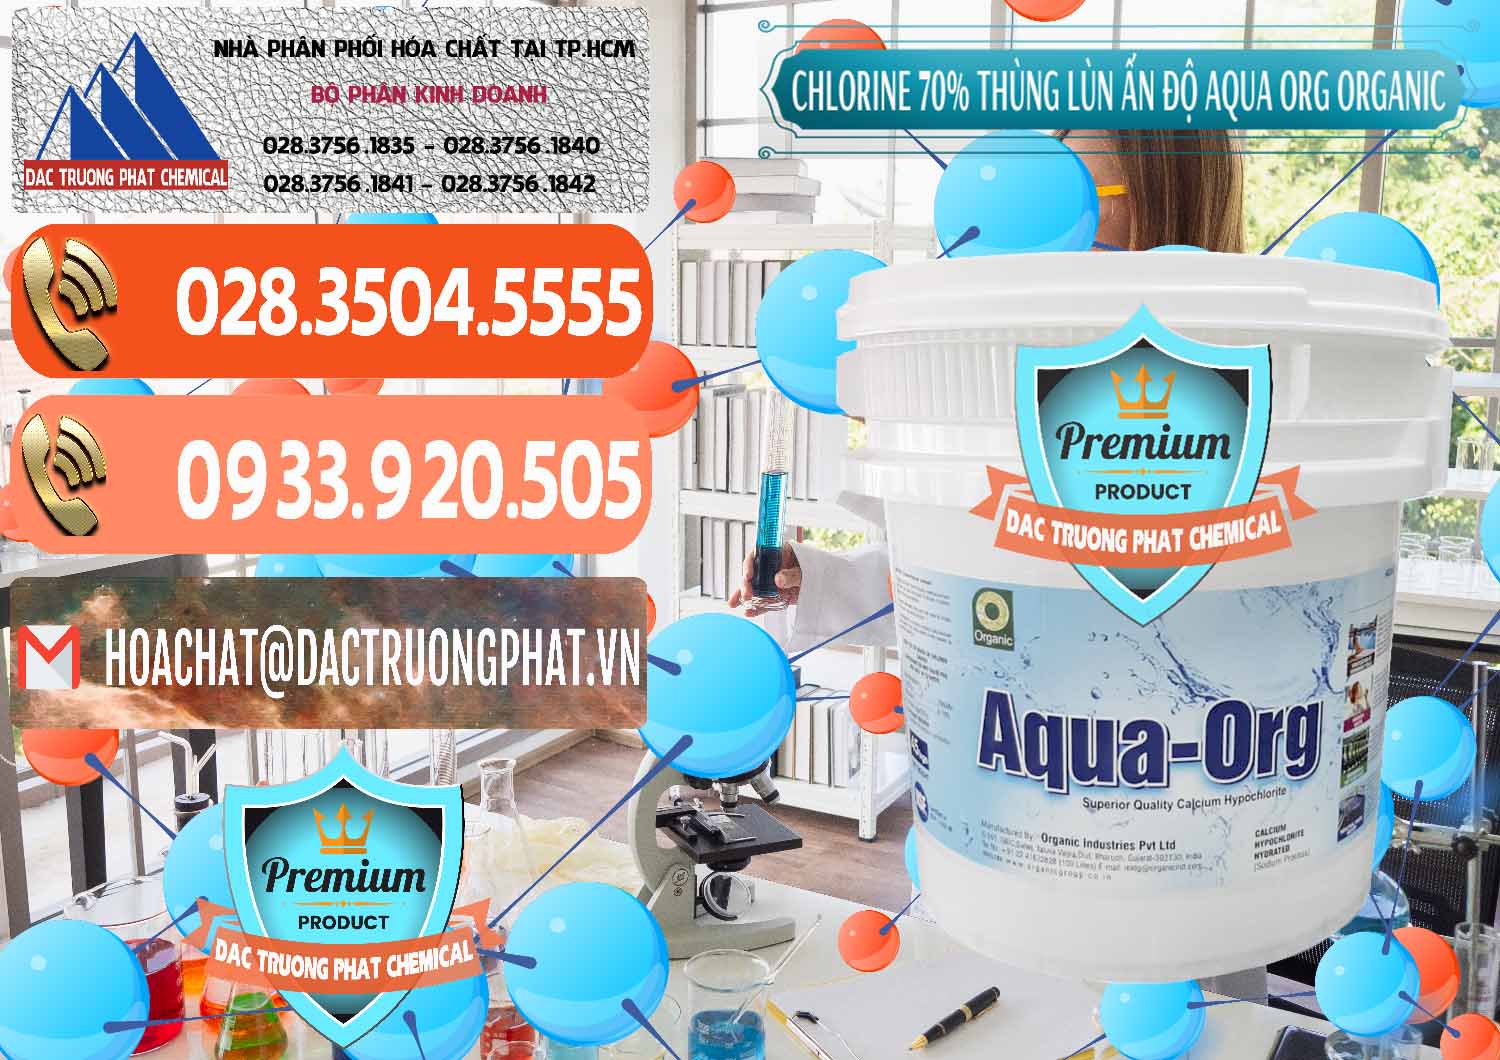 Đơn vị chuyên bán ( cung cấp ) Chlorine – Clorin 70% Thùng Lùn Ấn Độ Aqua ORG Organic India - 0212 - Công ty chuyên nhập khẩu và cung cấp hóa chất tại TP.HCM - hoachatmientay.com